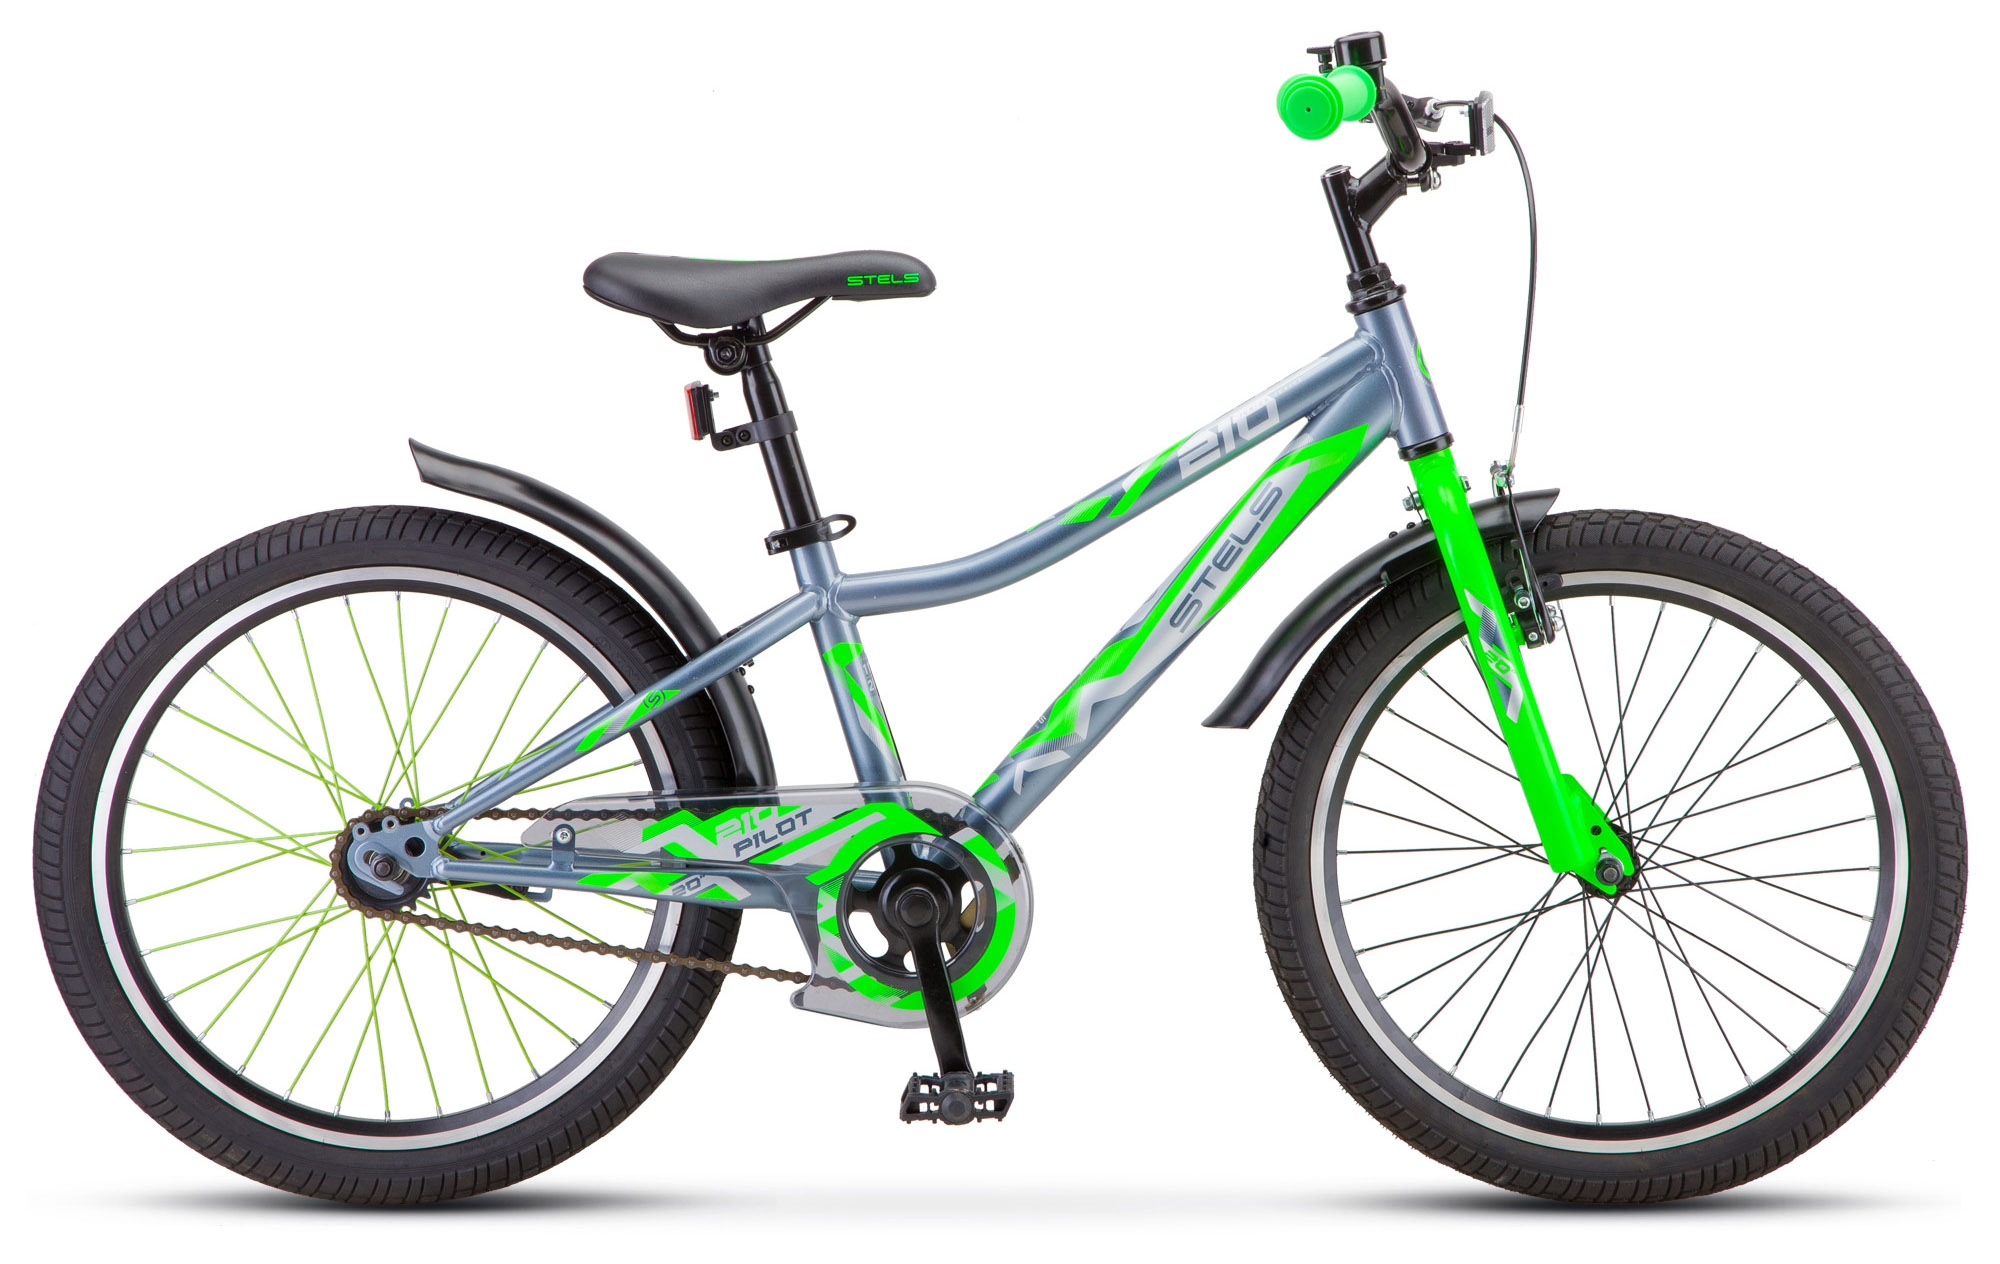  Отзывы о Детском велосипеде Stels Pilot 210 Z010 (2021) 2021